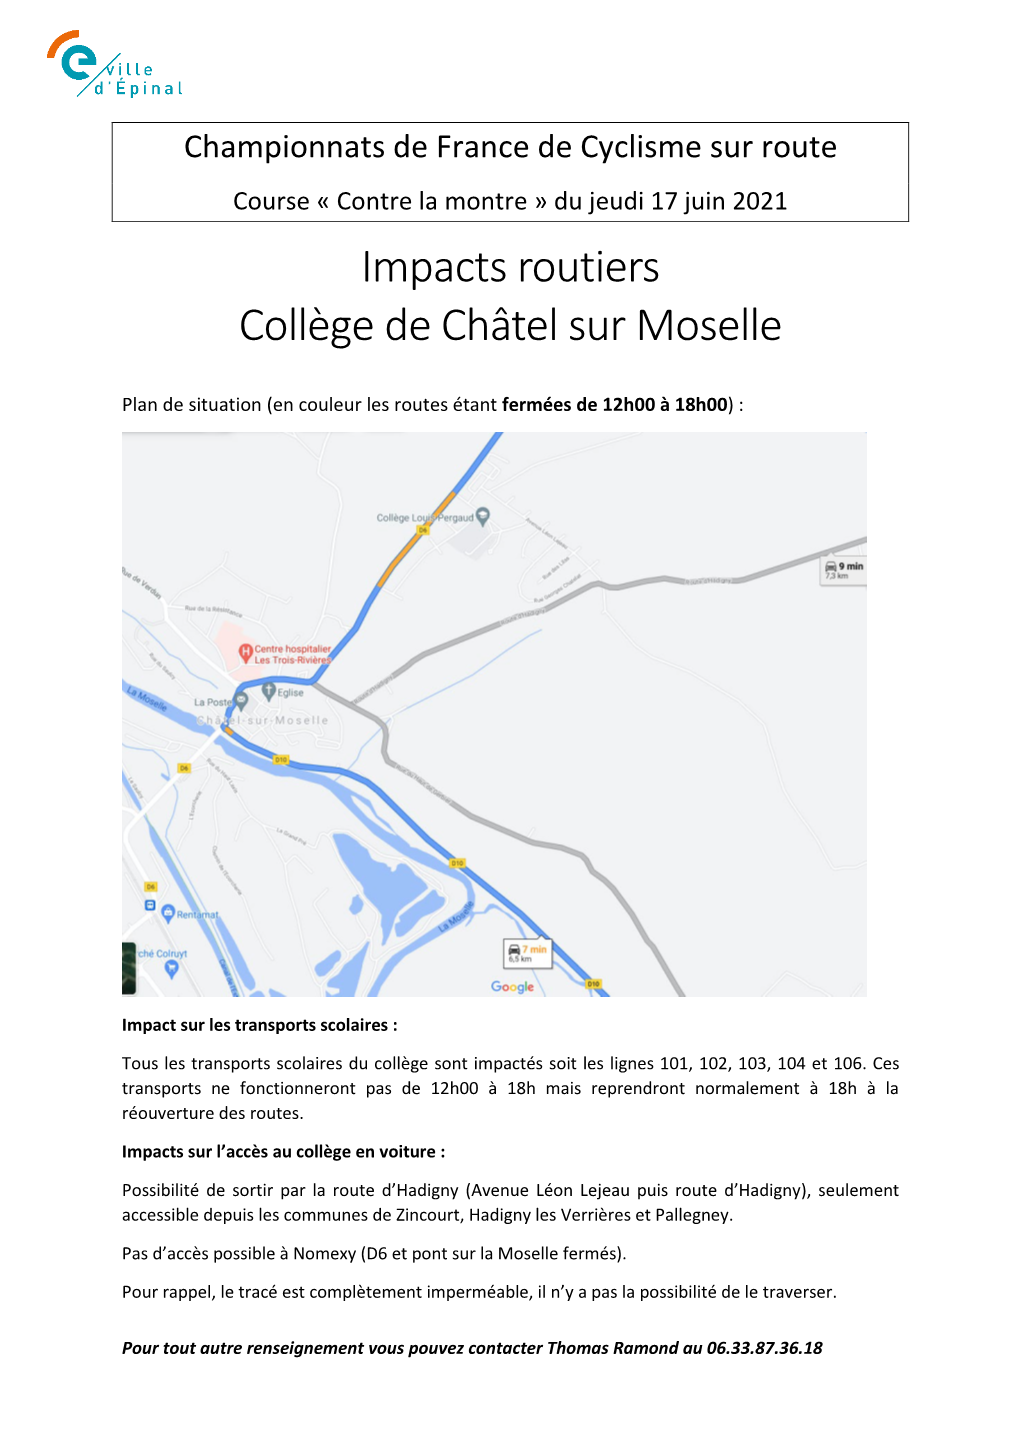 Impacts Routiers Collège De Châtel Sur Moselle